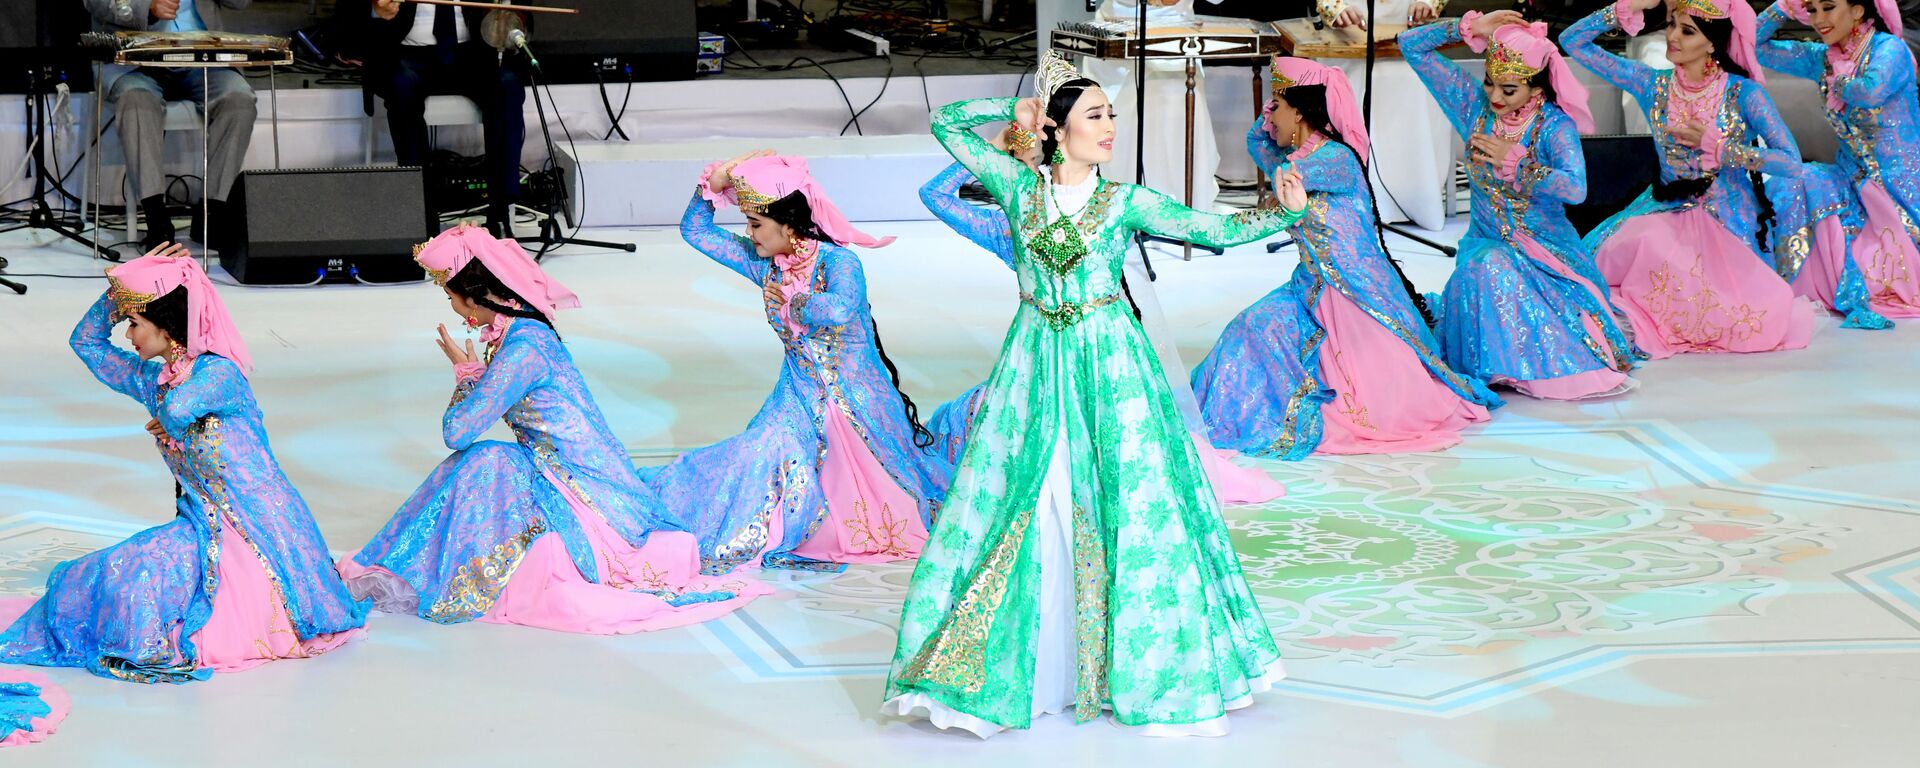 Национальные узбекские танцы на концерте в честь Дня независимости - Sputnik Узбекистан, 1920, 07.09.2021